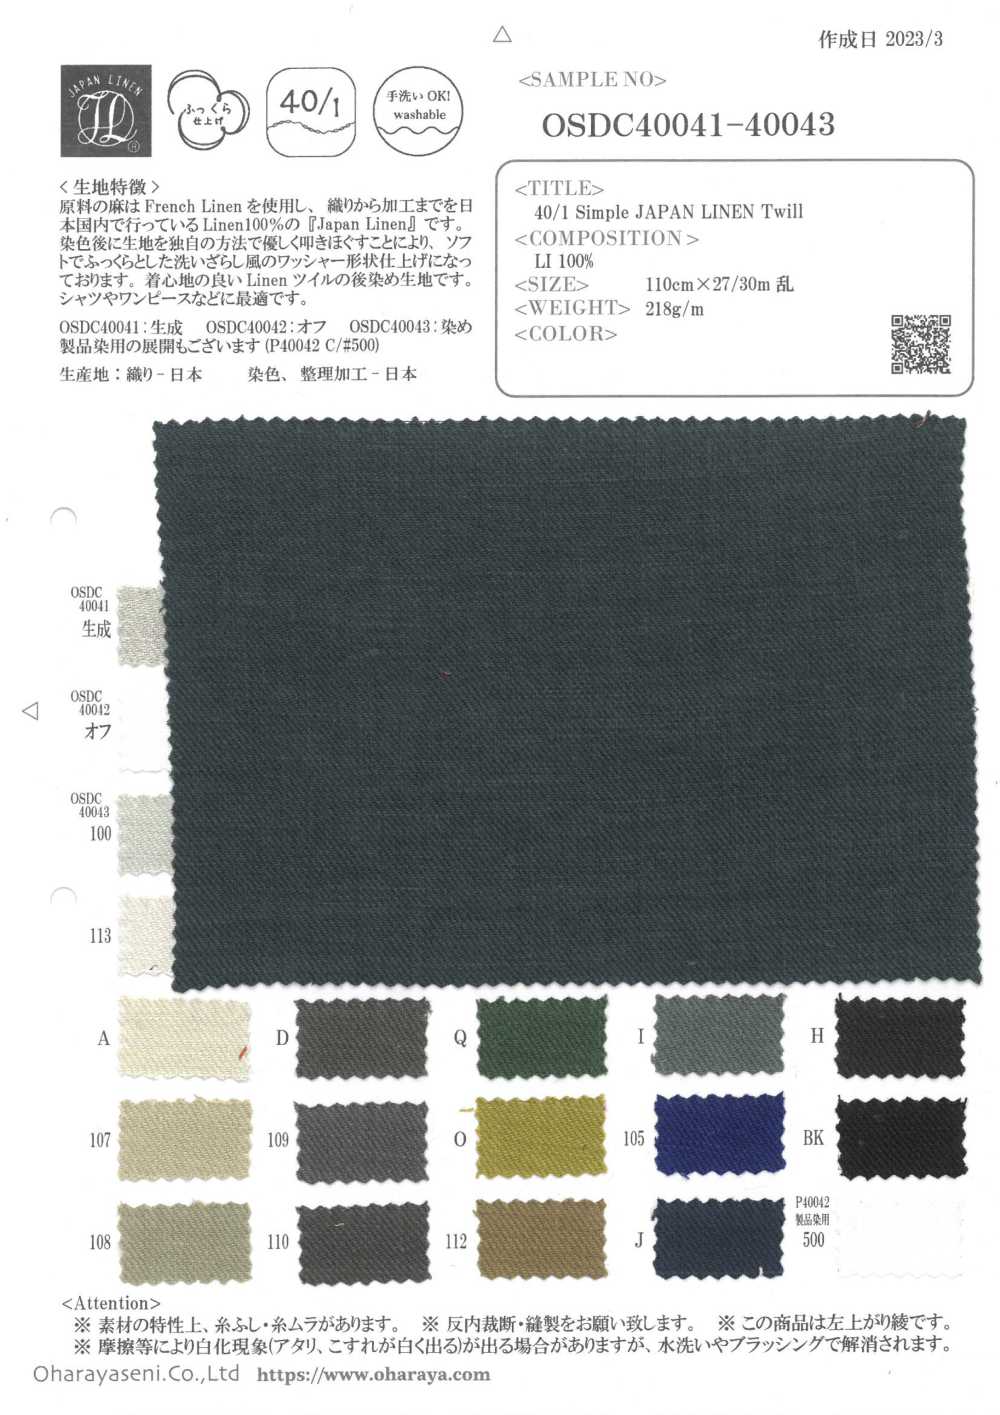 OSDC40042 40/1 Einfacher Japanischer Leinen-Twill[]